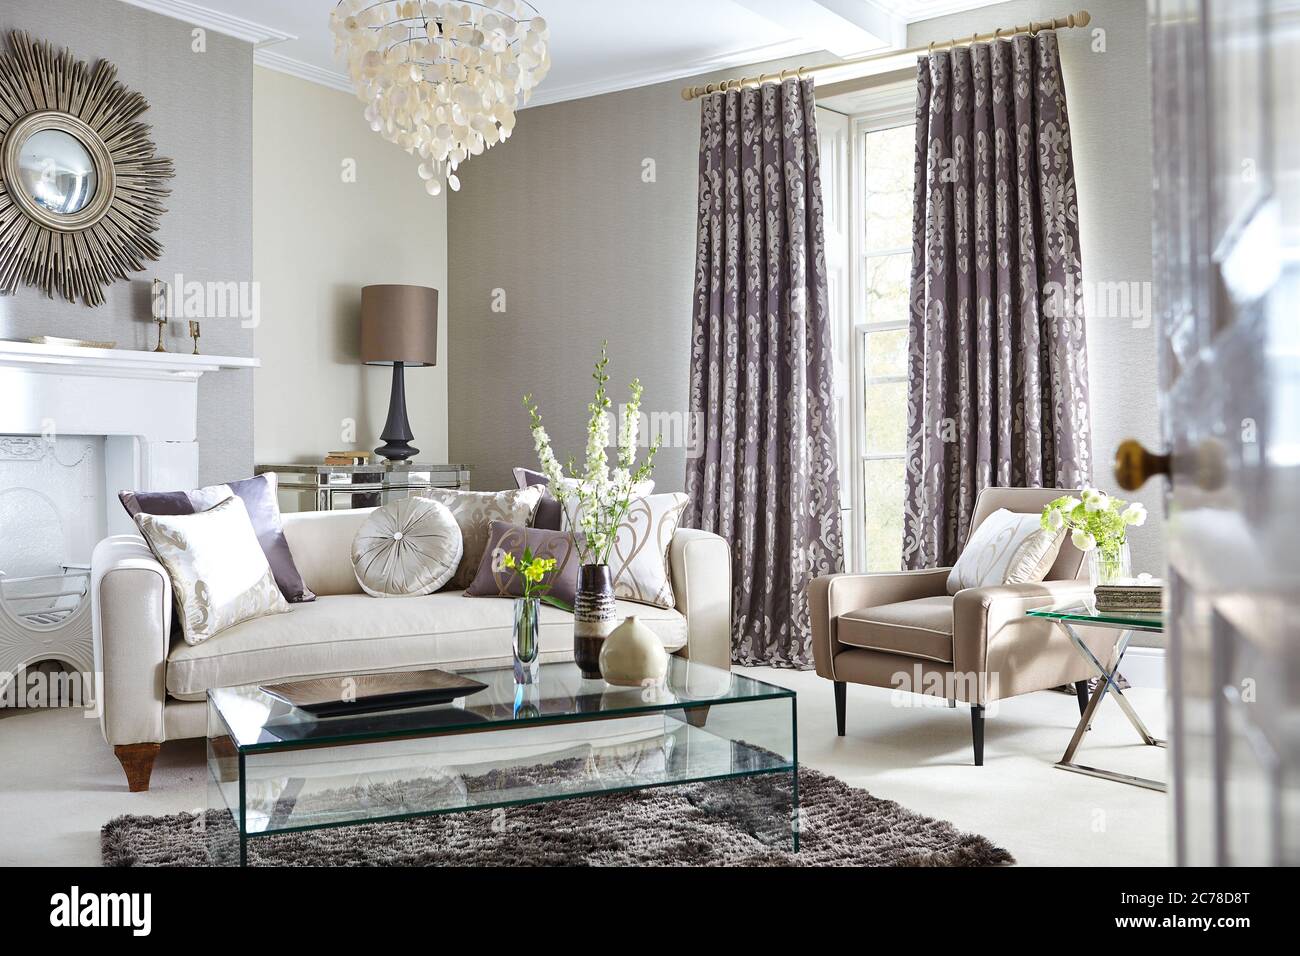 Aufnahme eines luxuriösen Wohnzimmers mit eleganten Möbeln in einem modernen Zuhause Stockfoto